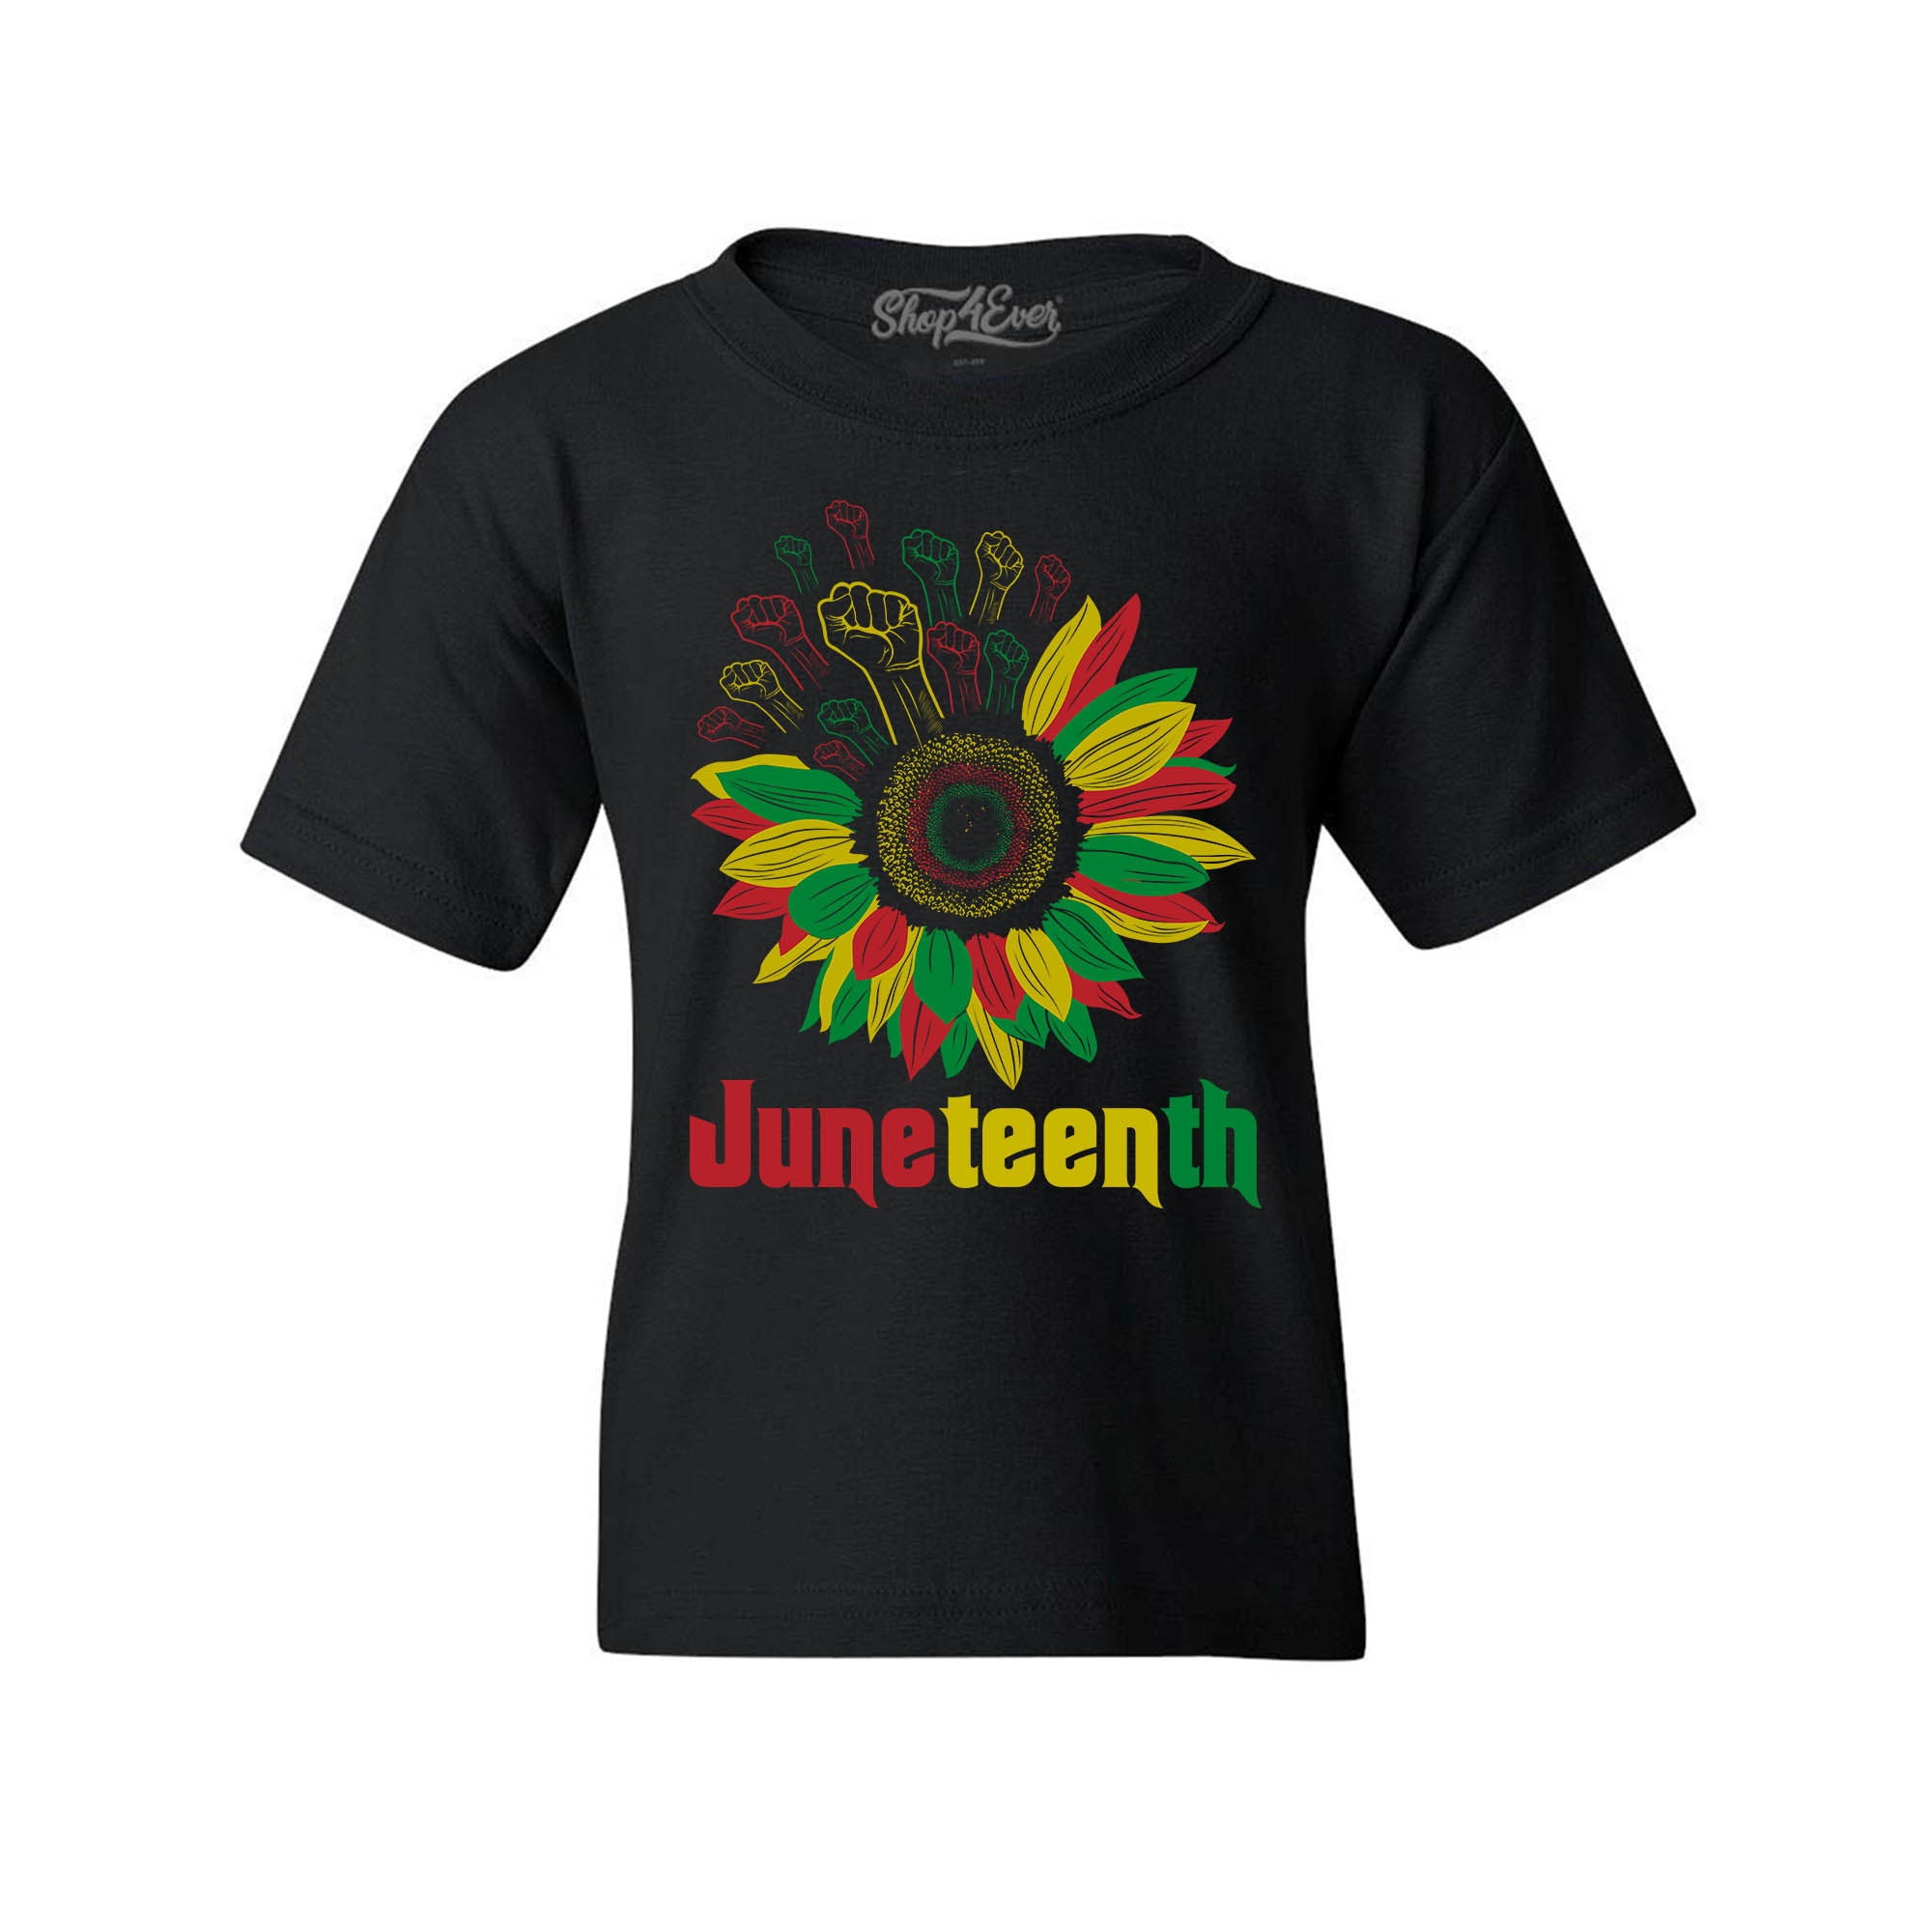 Juneteenth Black Fist Flower Power June 19th 1865 Child's T-Shirt Kids Tee